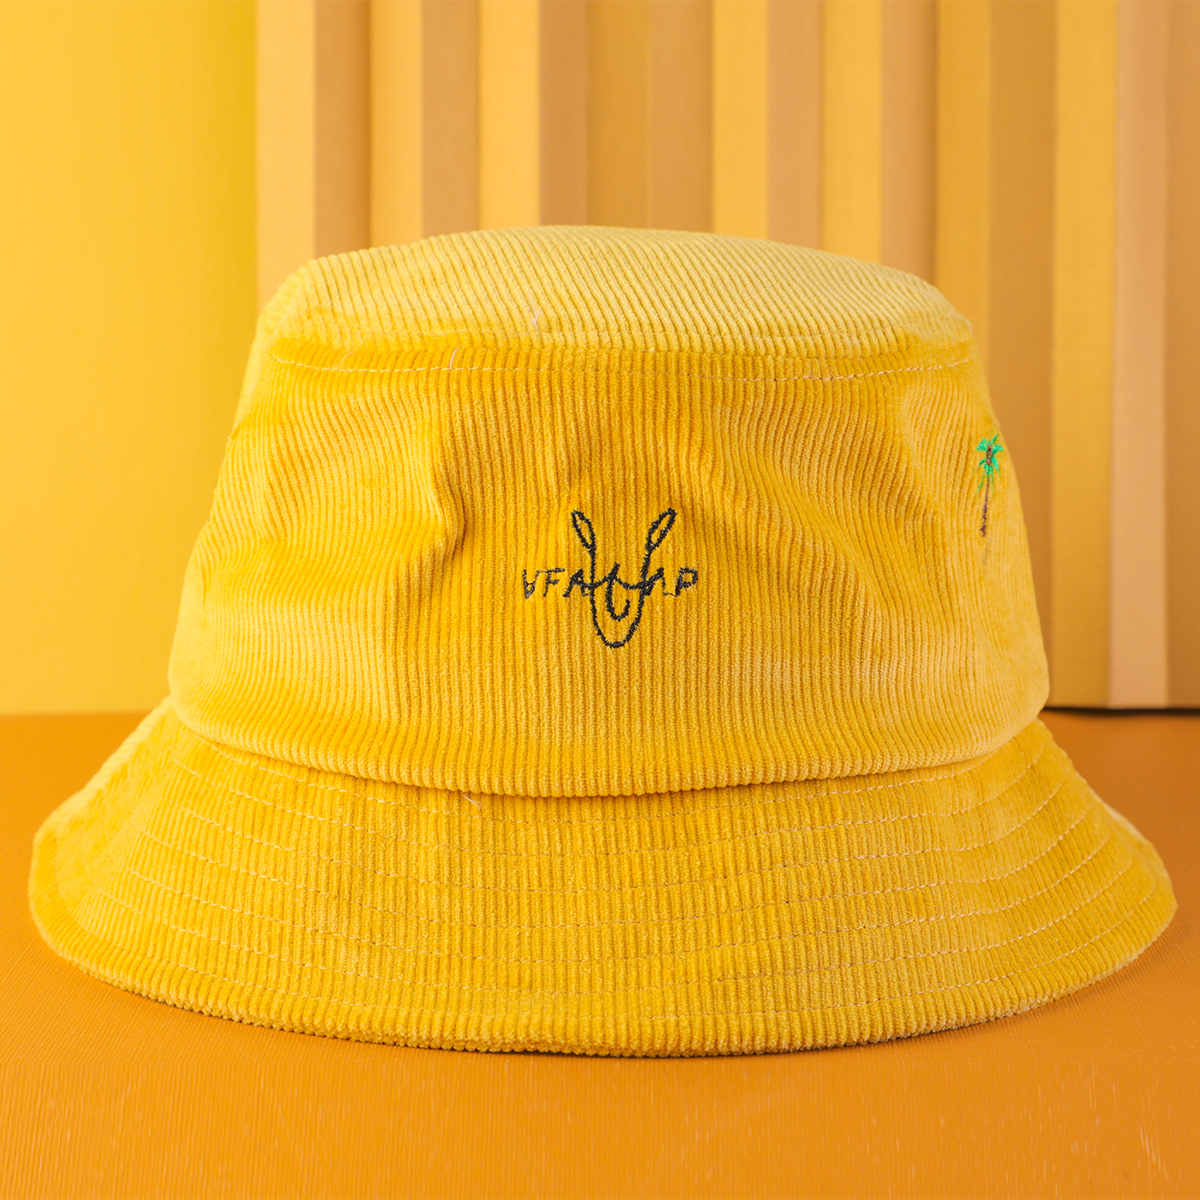 التطريز vfa شعار القبعات دلو كودري الأصفر القبعات المخصصة